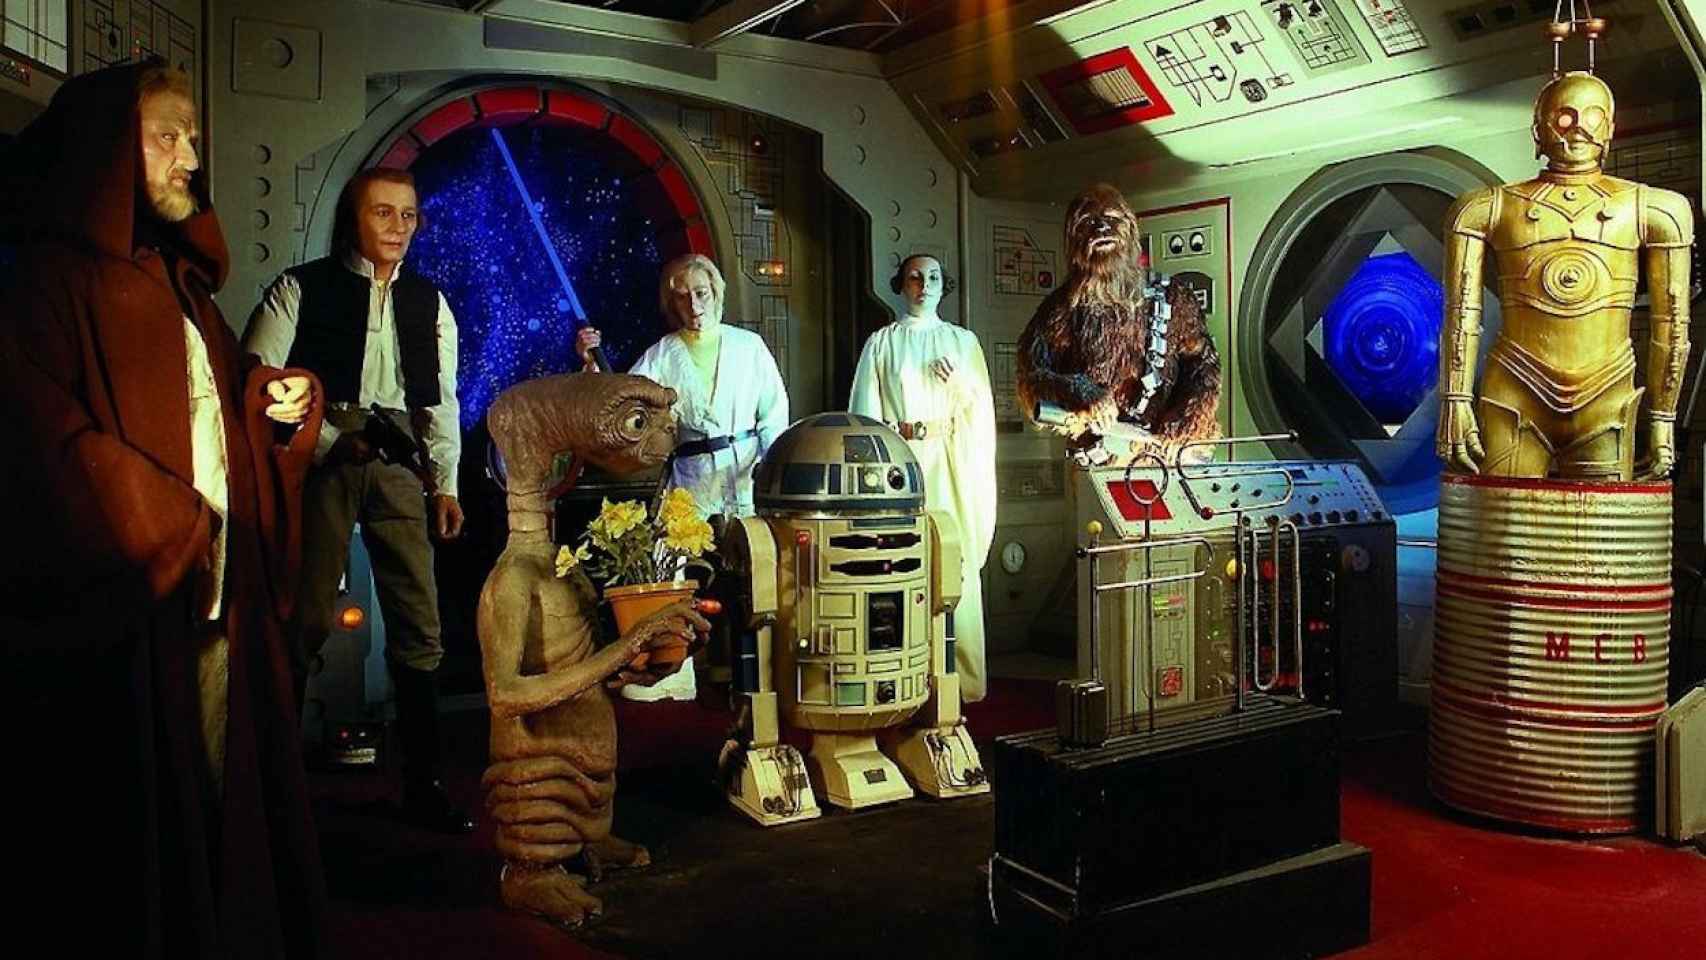 Personajes de Star Wars en una imagen de archivo